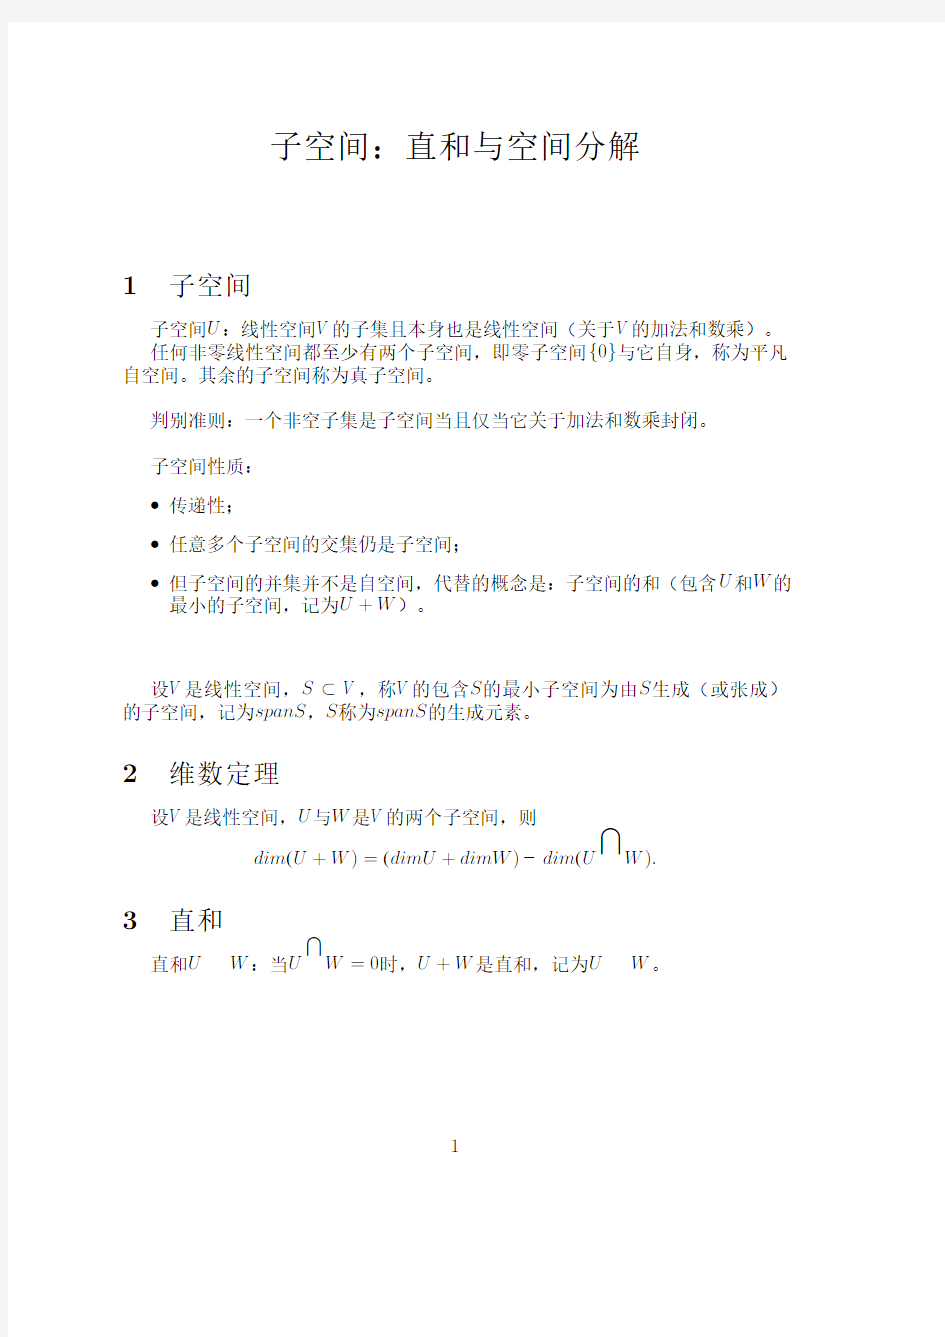 上海交通大学 矩阵理论 课件20110922